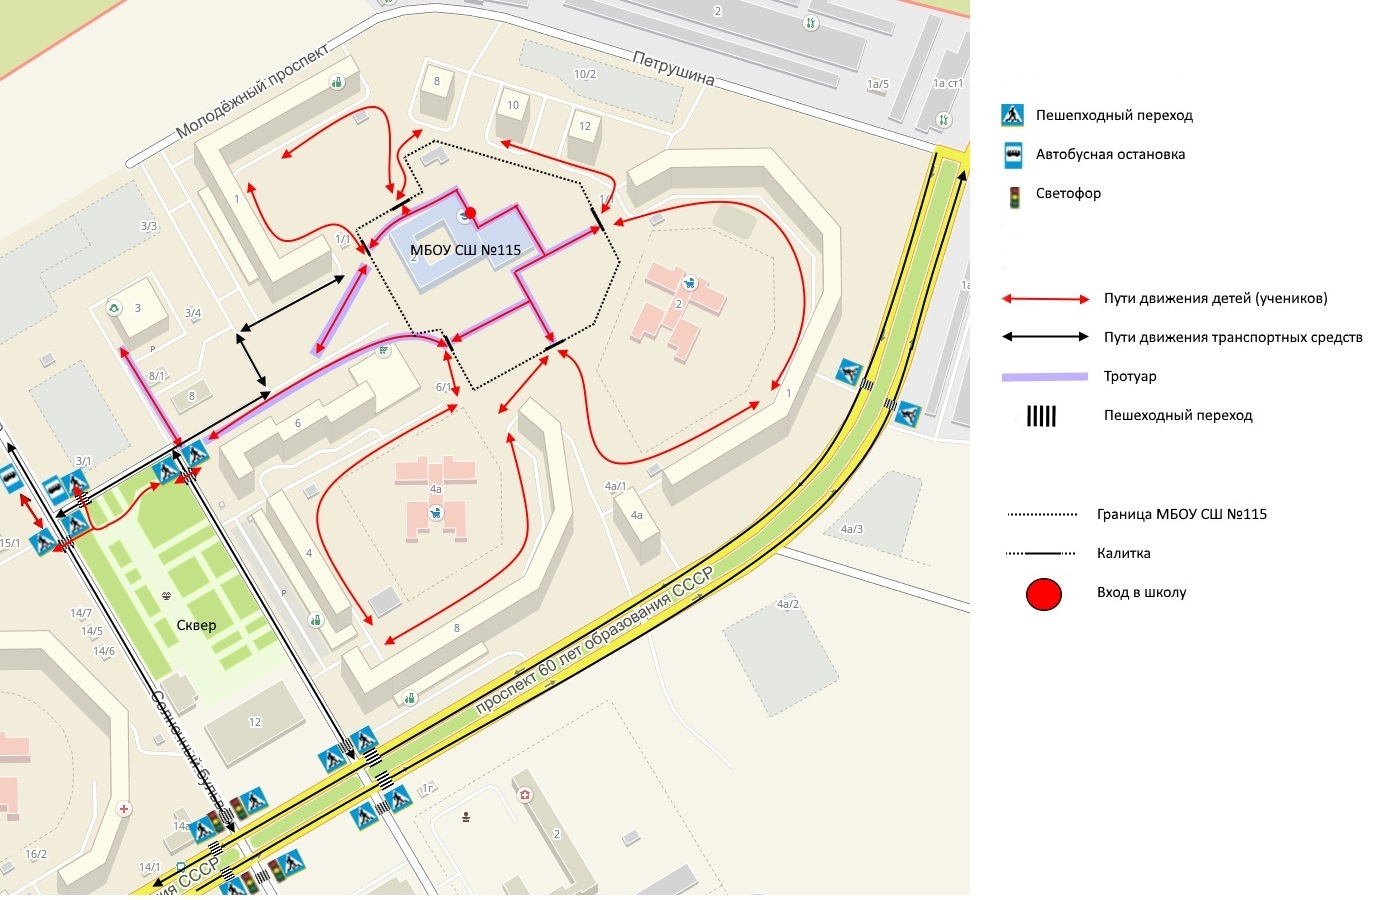 План-схема района расположения МБОУ СШ №115, пути движения транспортных средств и детей (учеников)